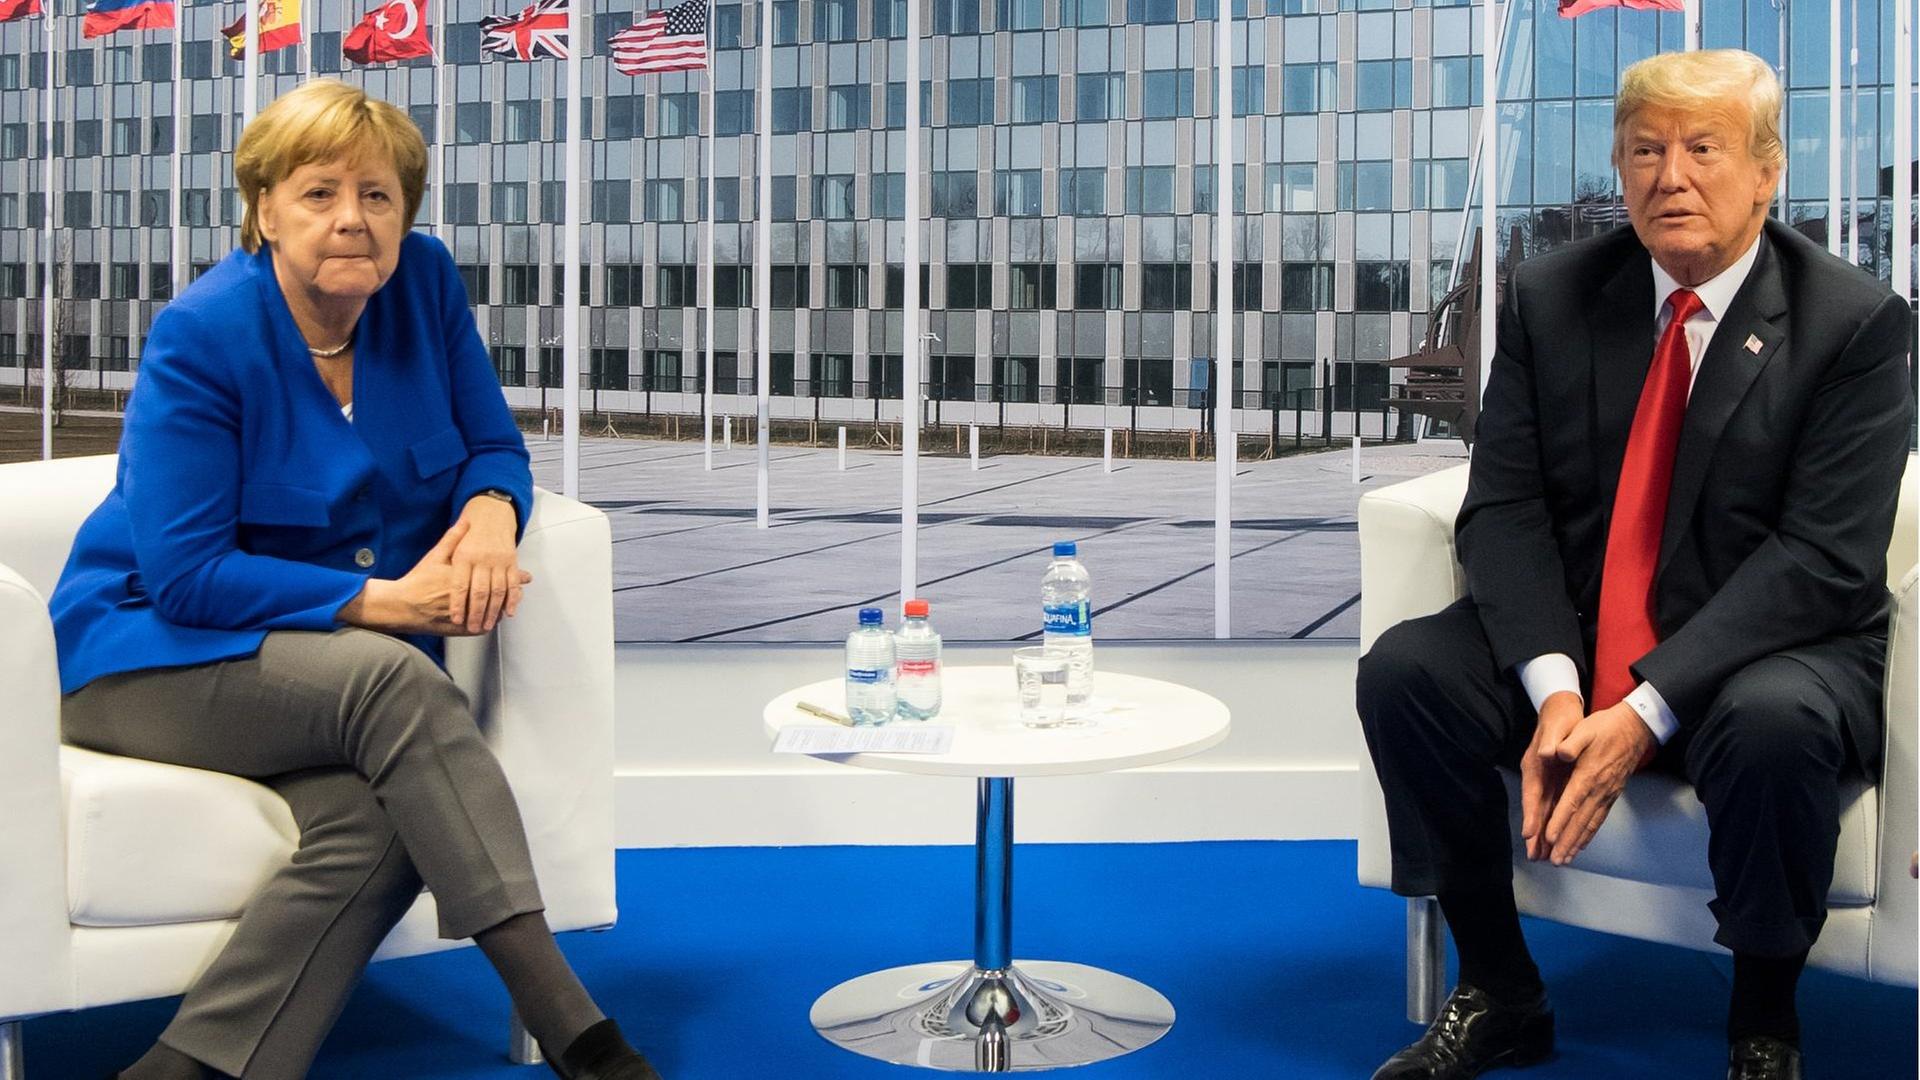 Bundeskanzlerin Angela Merkel und US-Präsident Donald Trump sprechen am Rande des Nato-Gipfels miteinander.